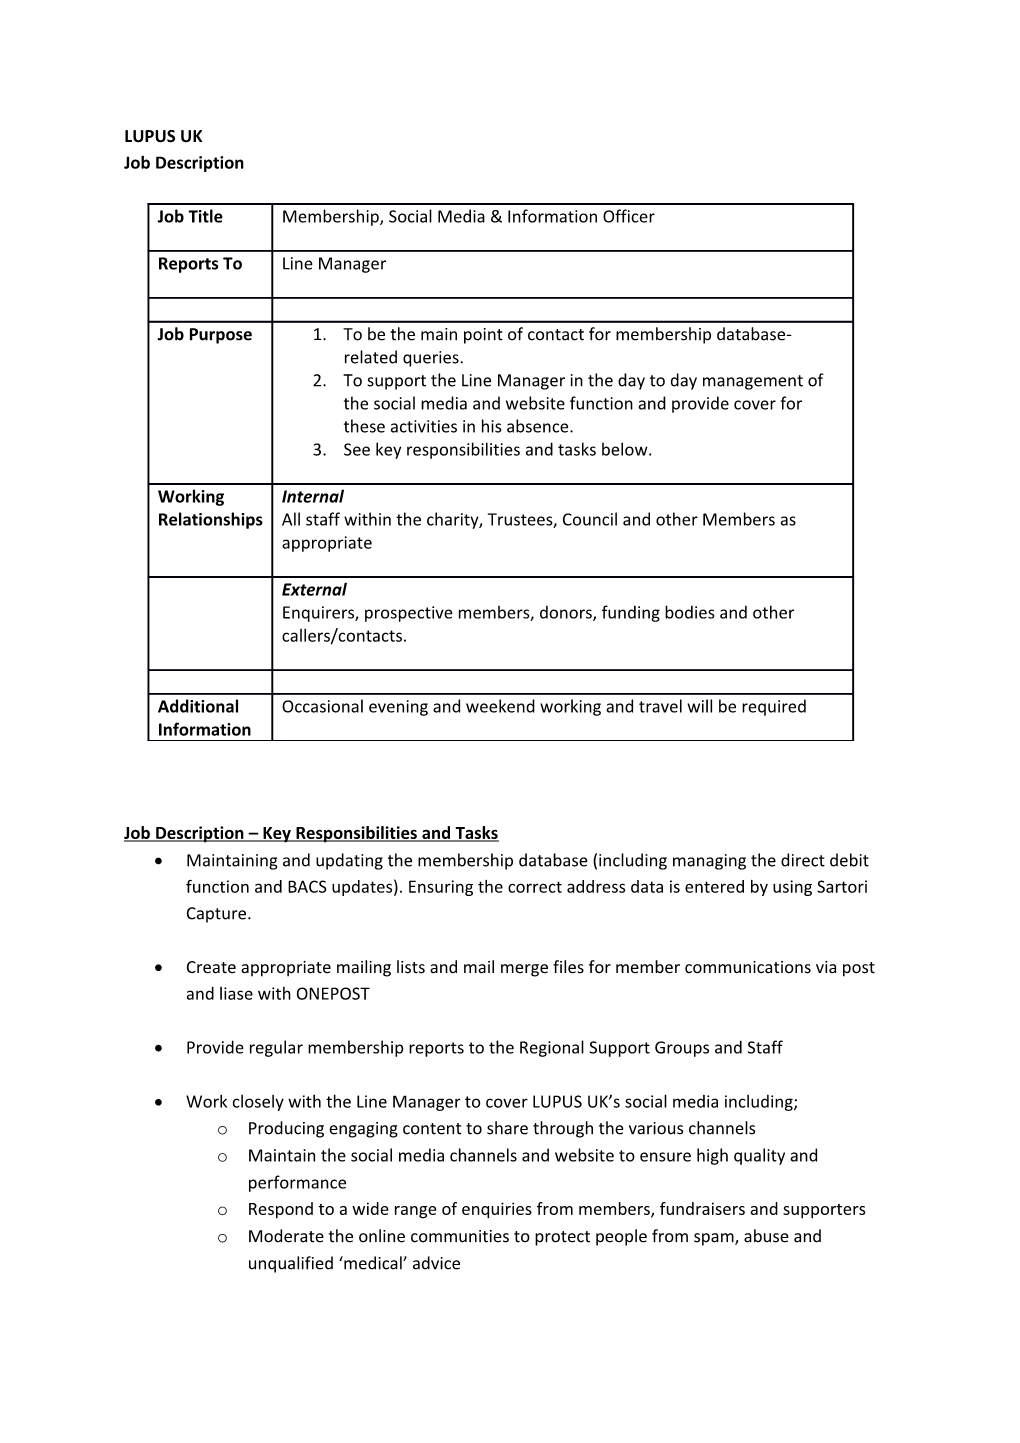 Job Description Key Responsibilities and Tasks